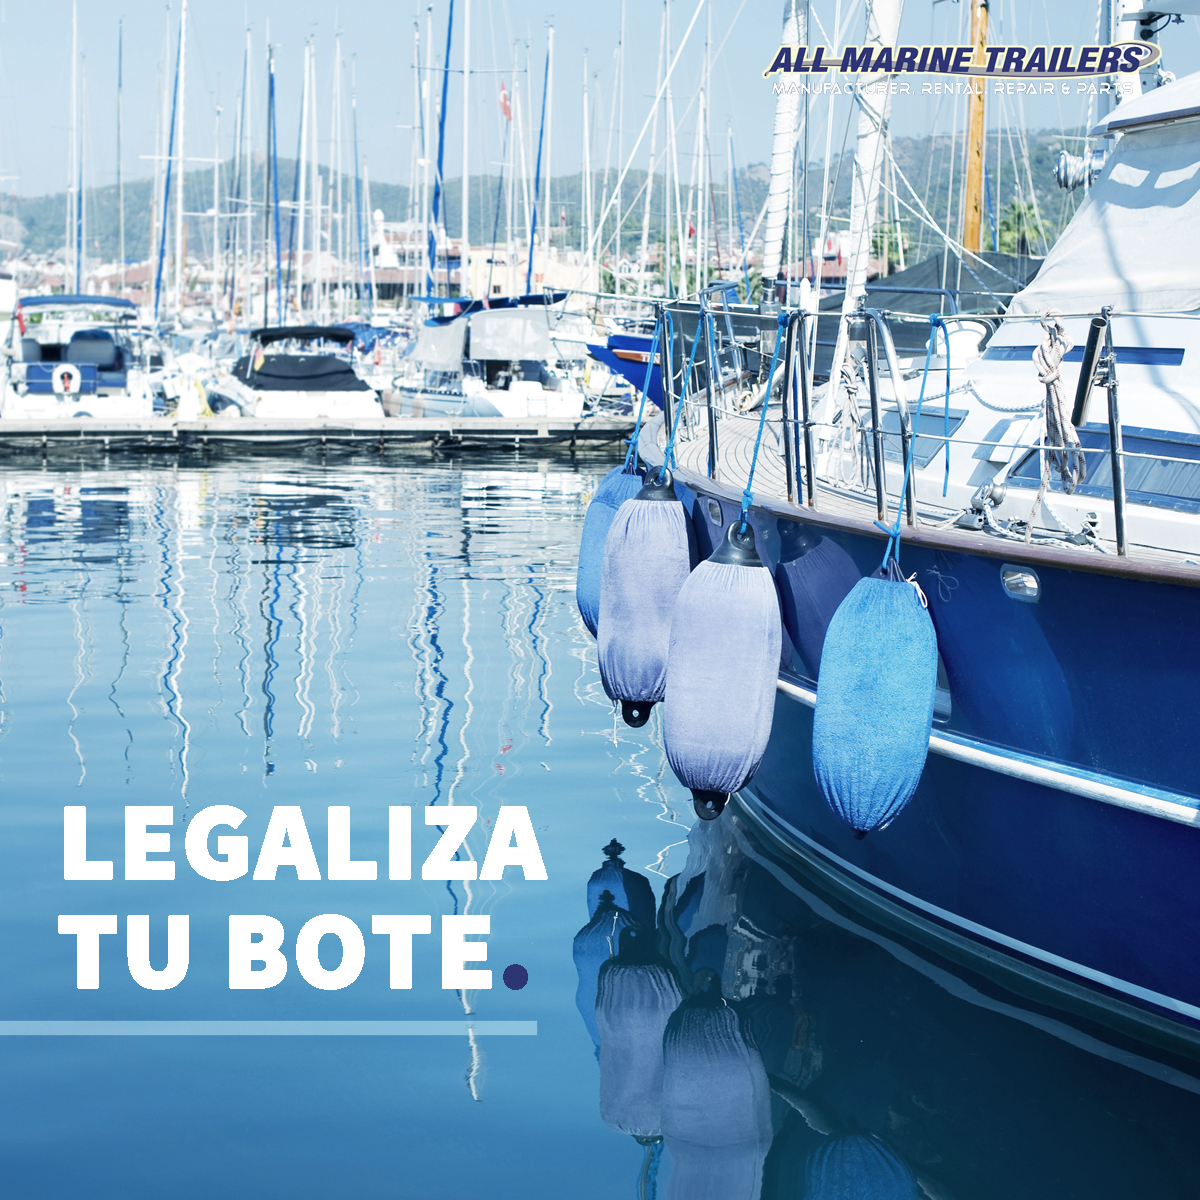 Legaliza tu bote